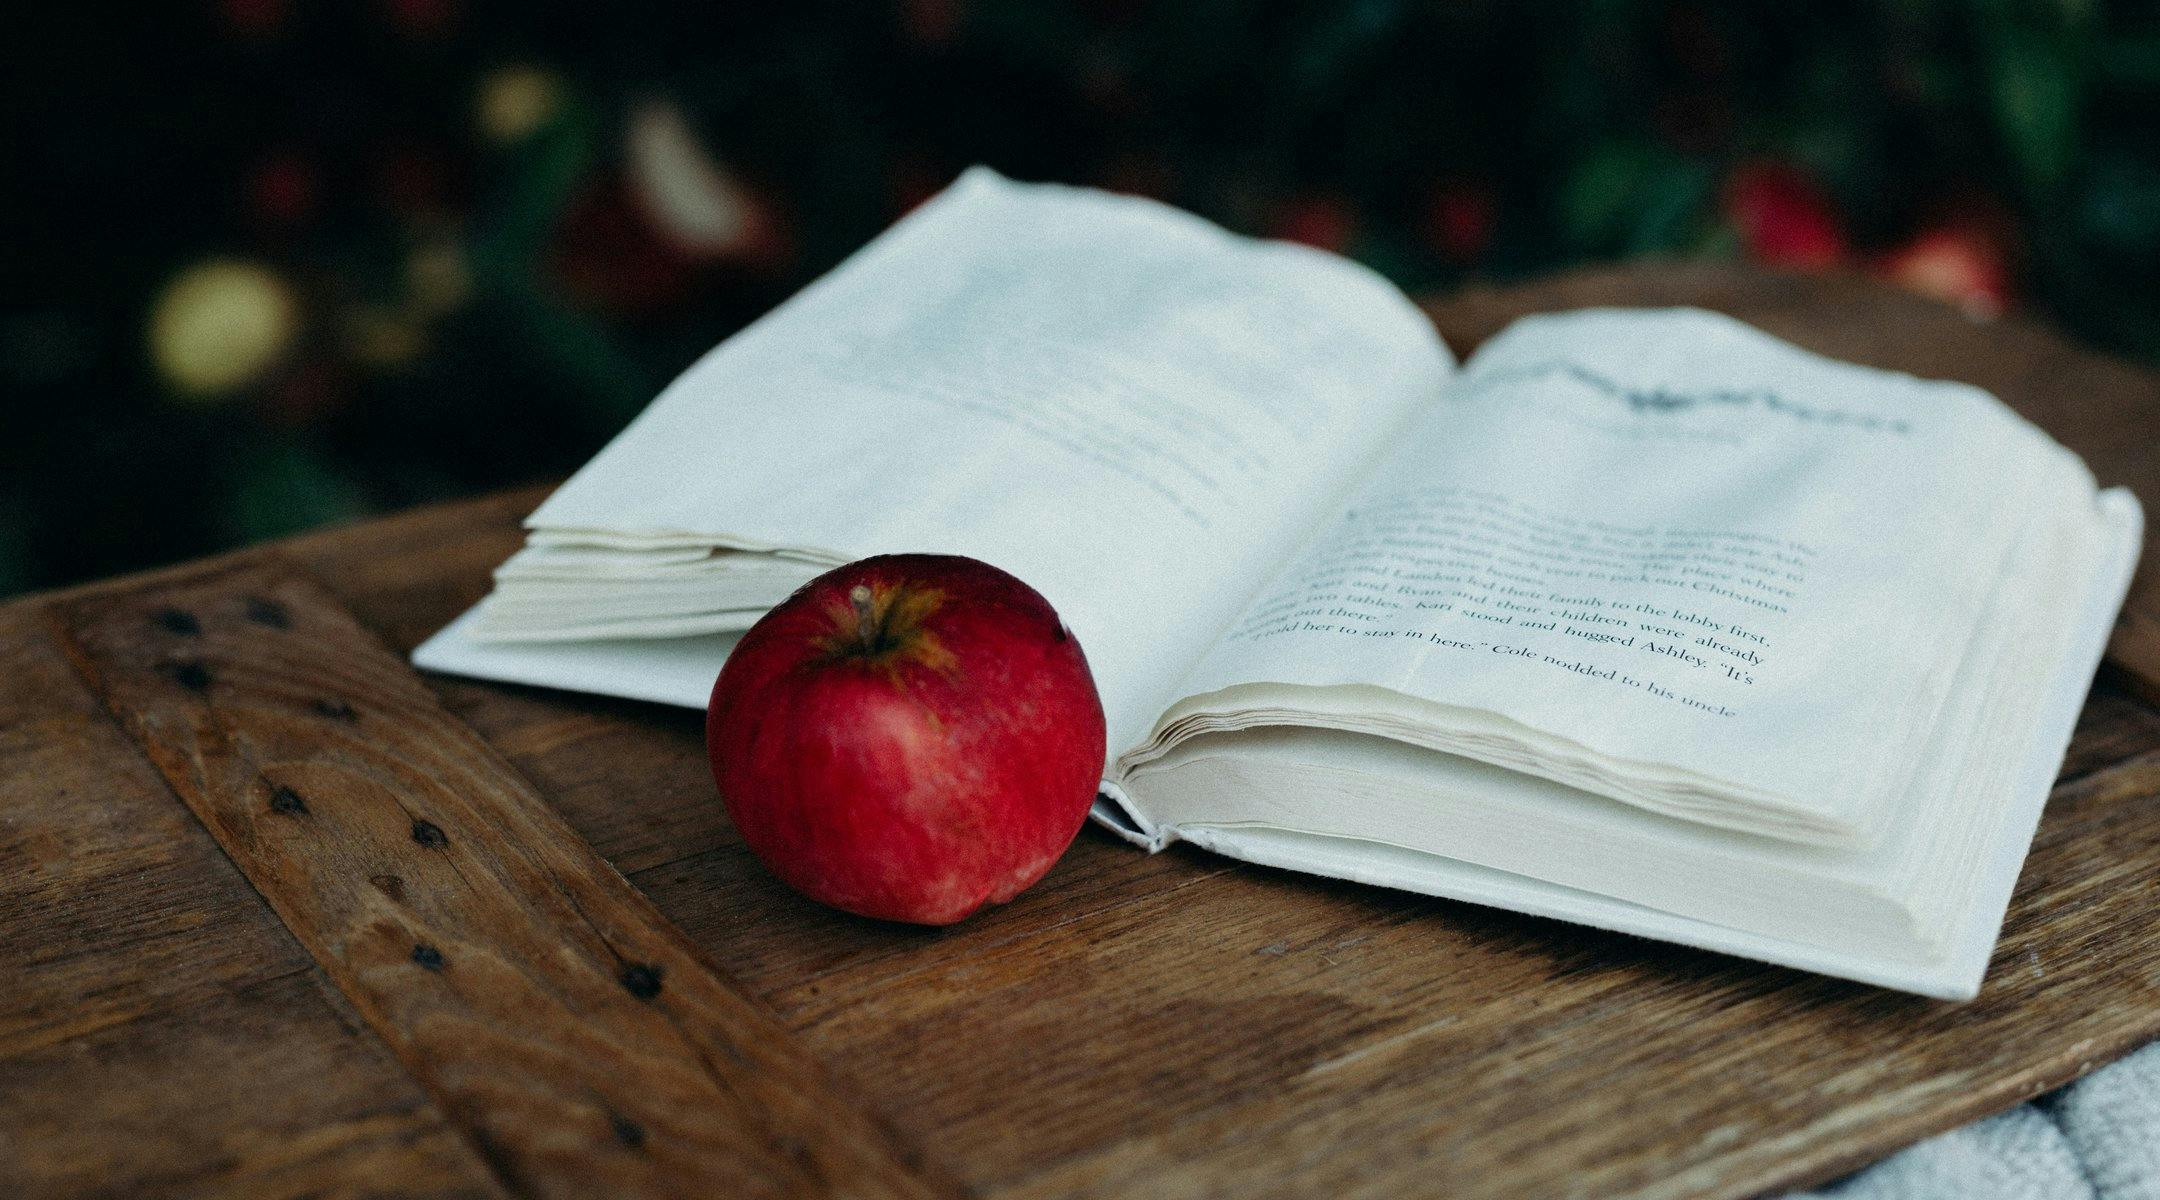 En åpen bok og et eple.